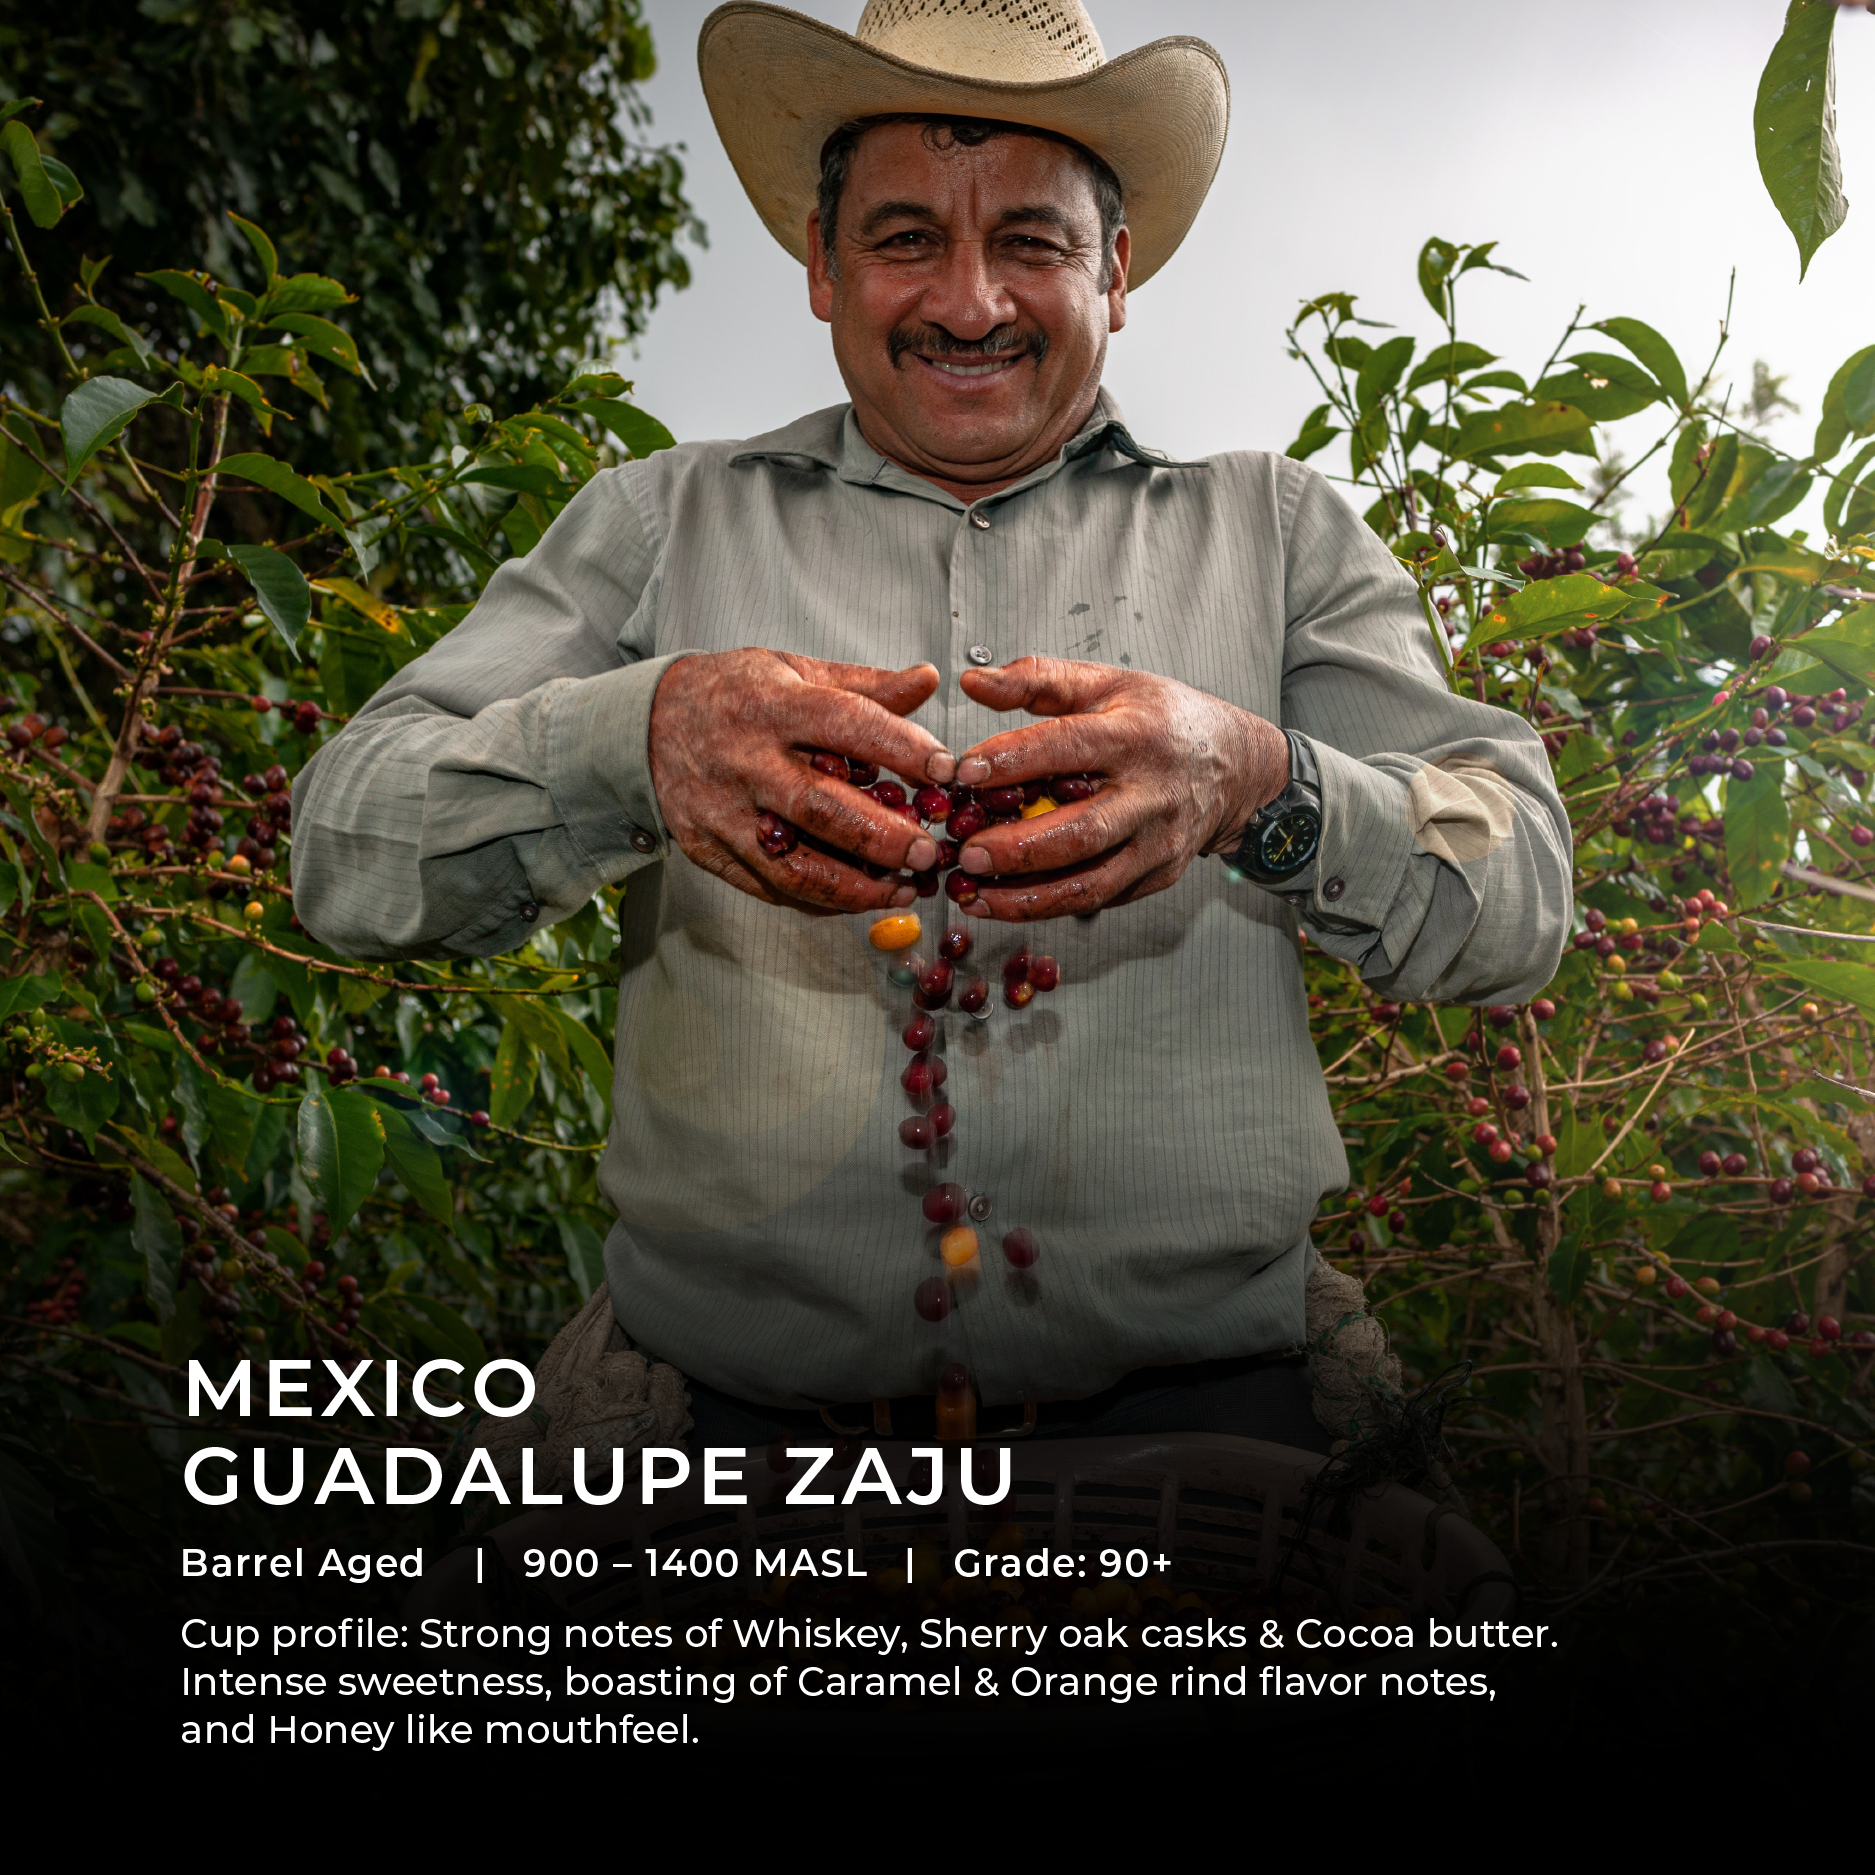 المكسيك - غوادالوبي زاجو